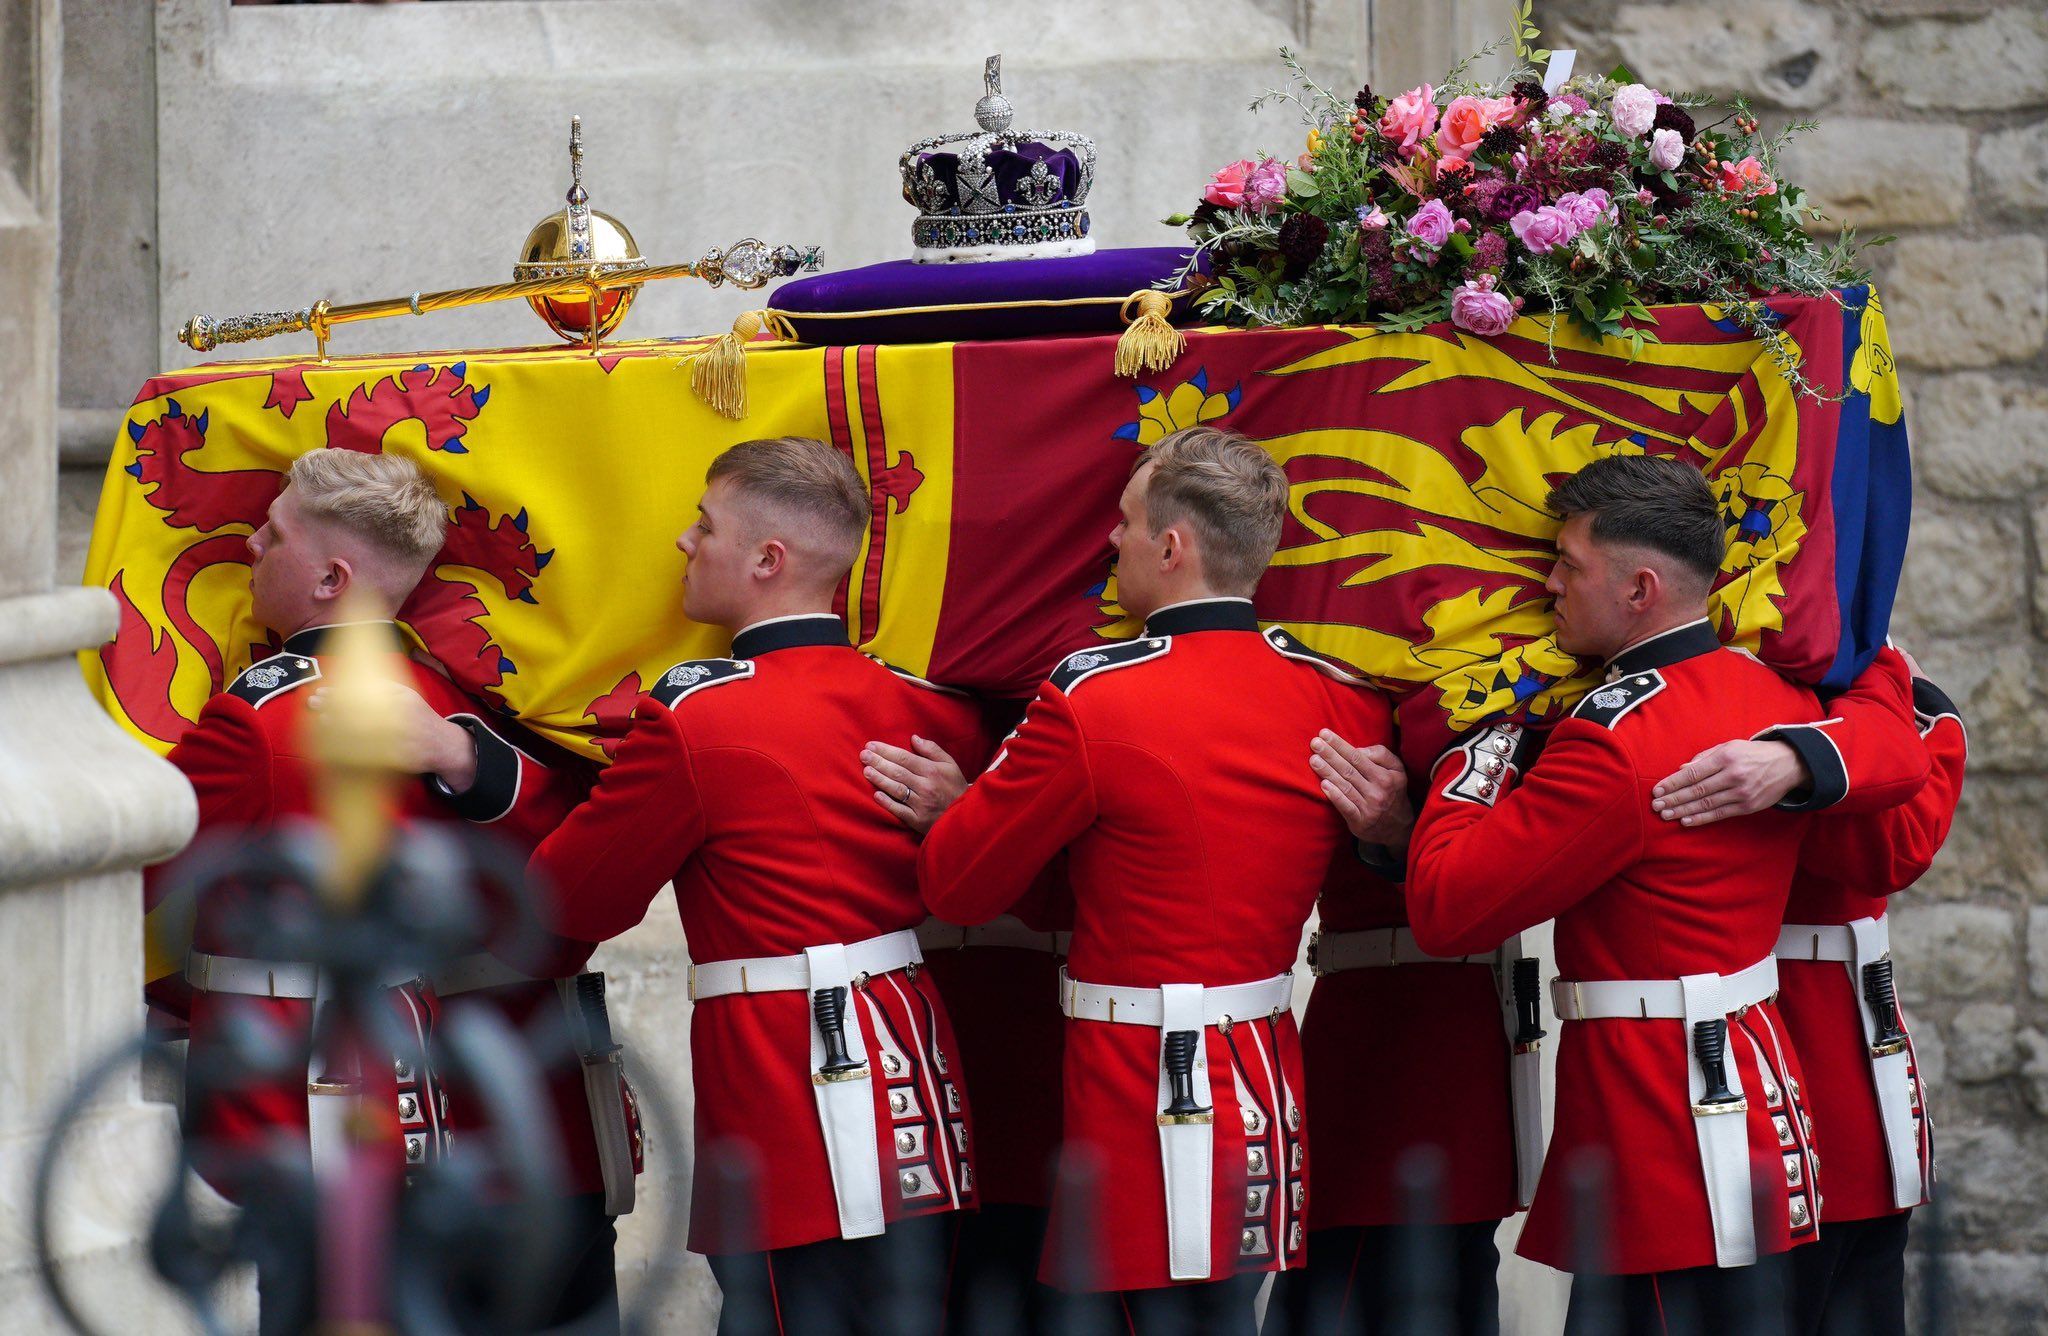 Wieniec pogrzebowy królowej Elżbiety II powstał z wyjątkowych roślin. Wspaniały gest króla Karola III